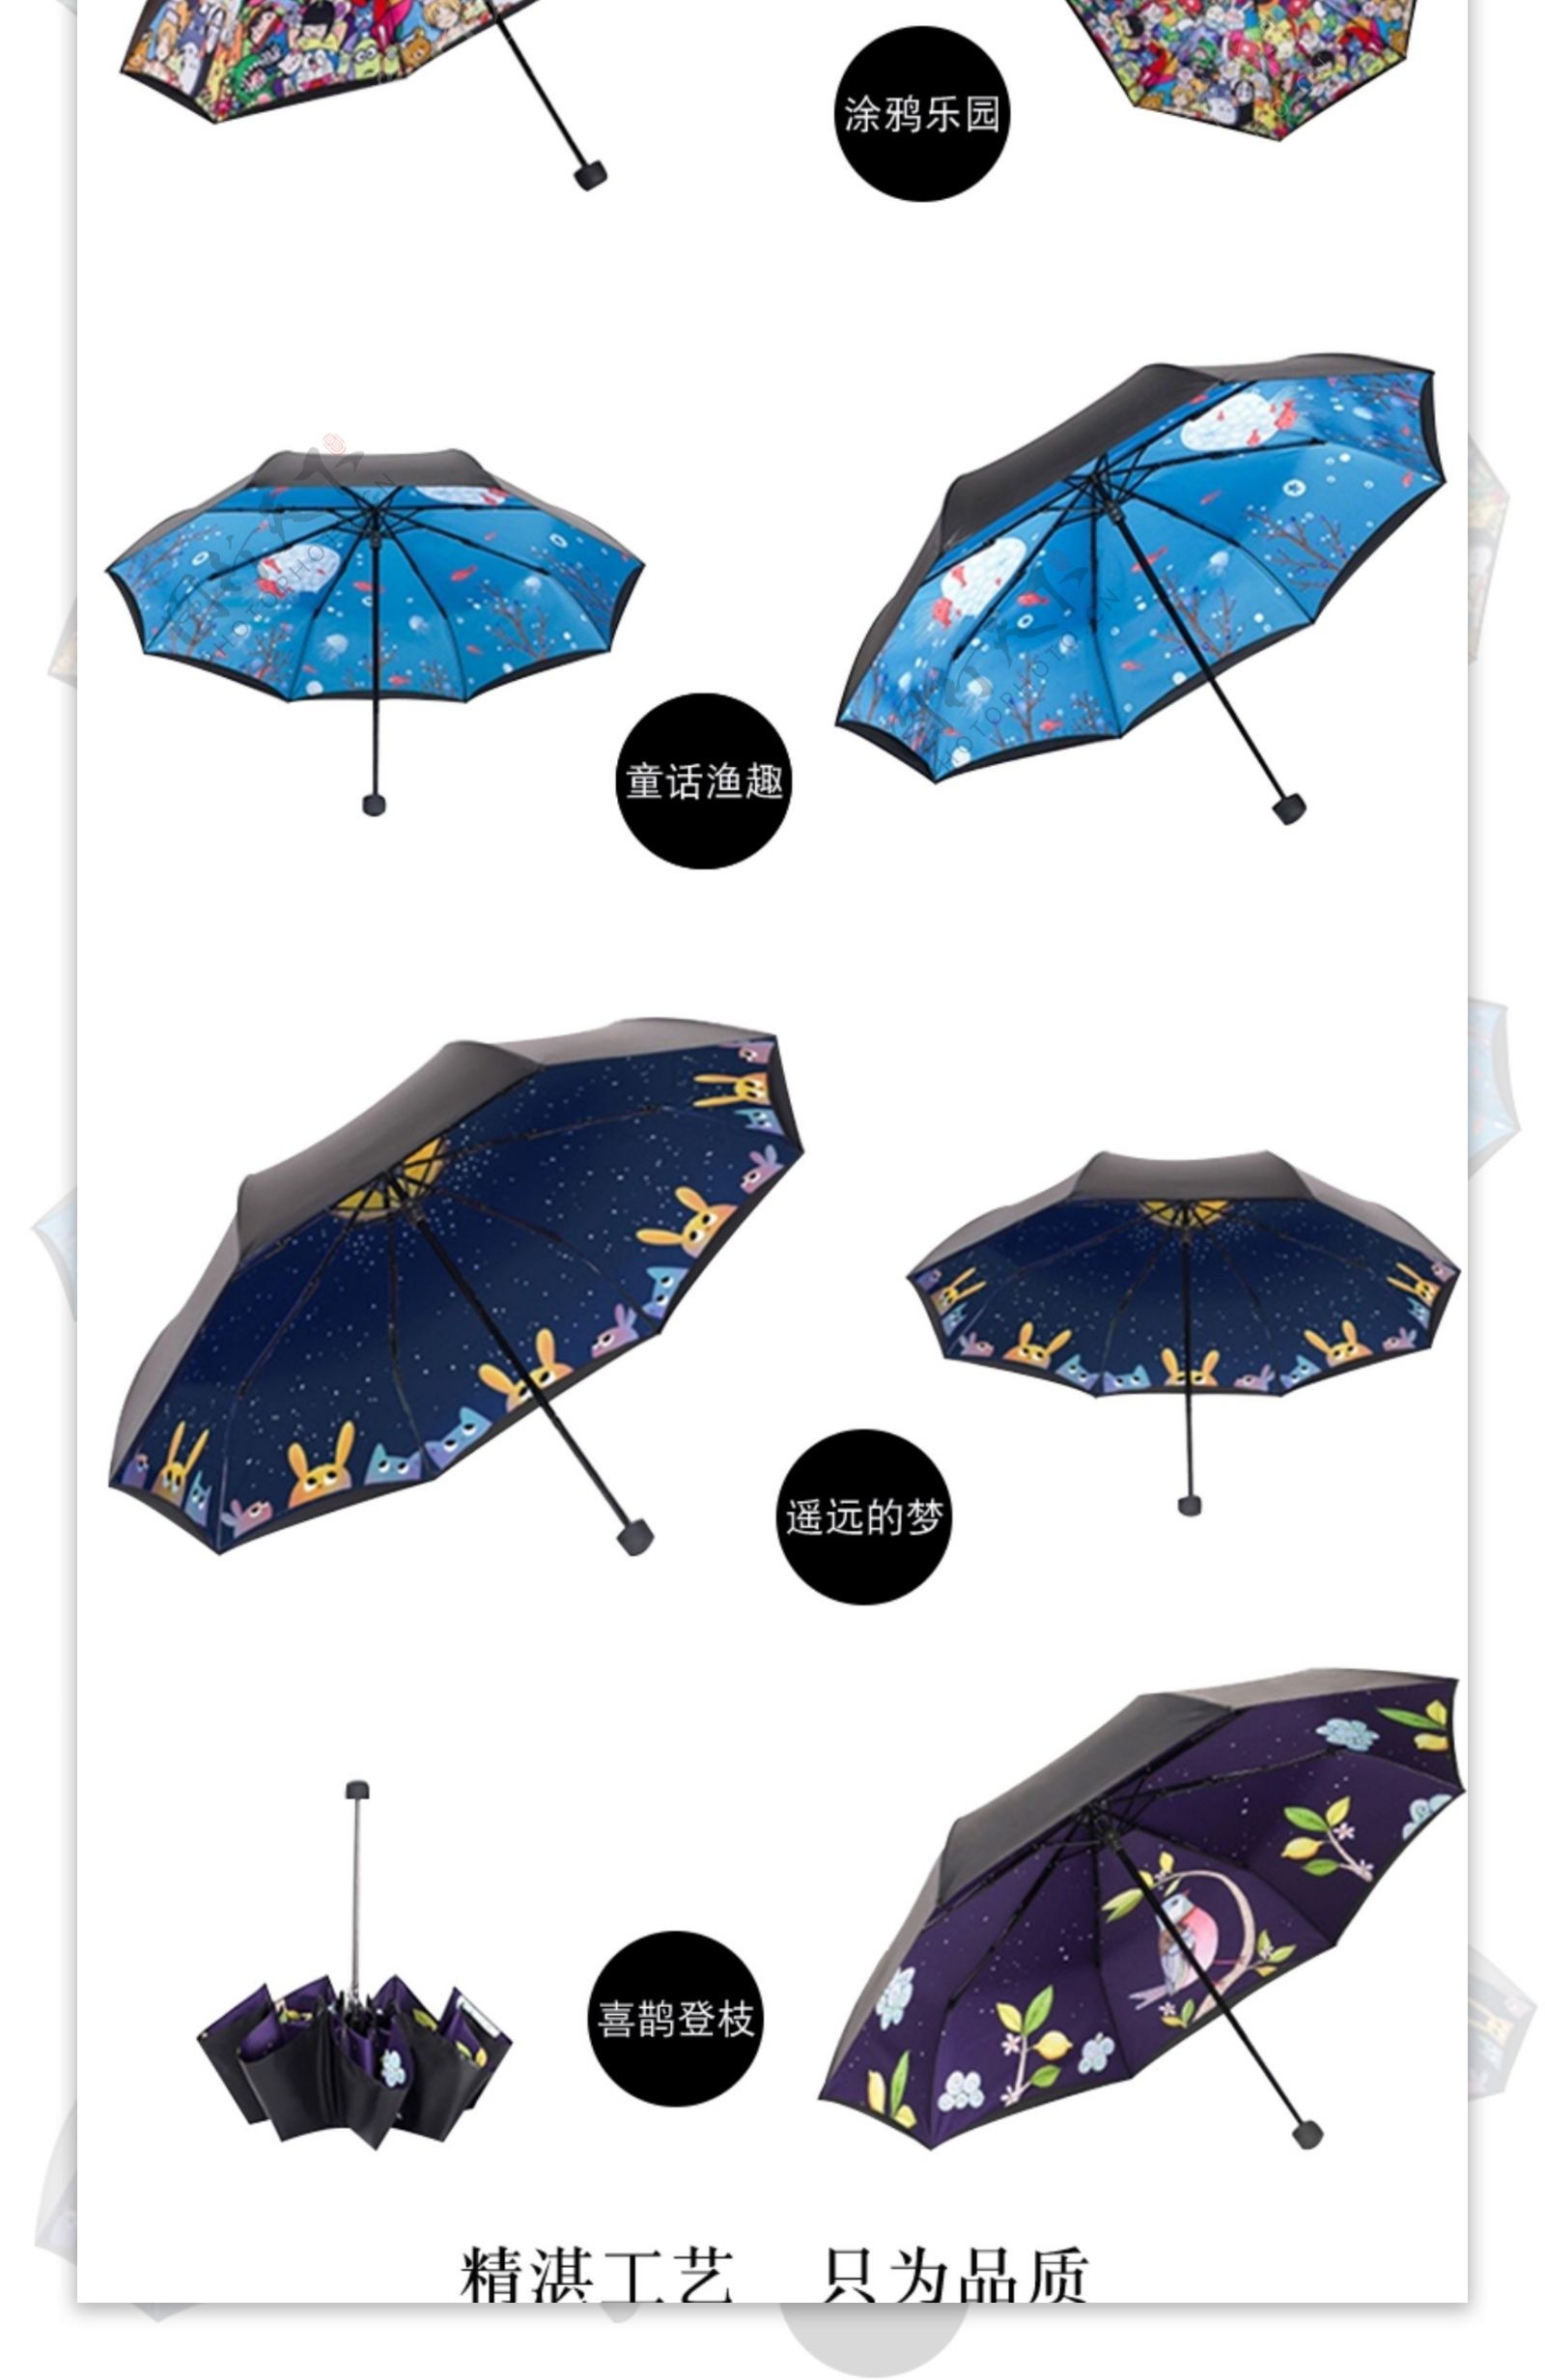 雨伞雨具简约大气详情页